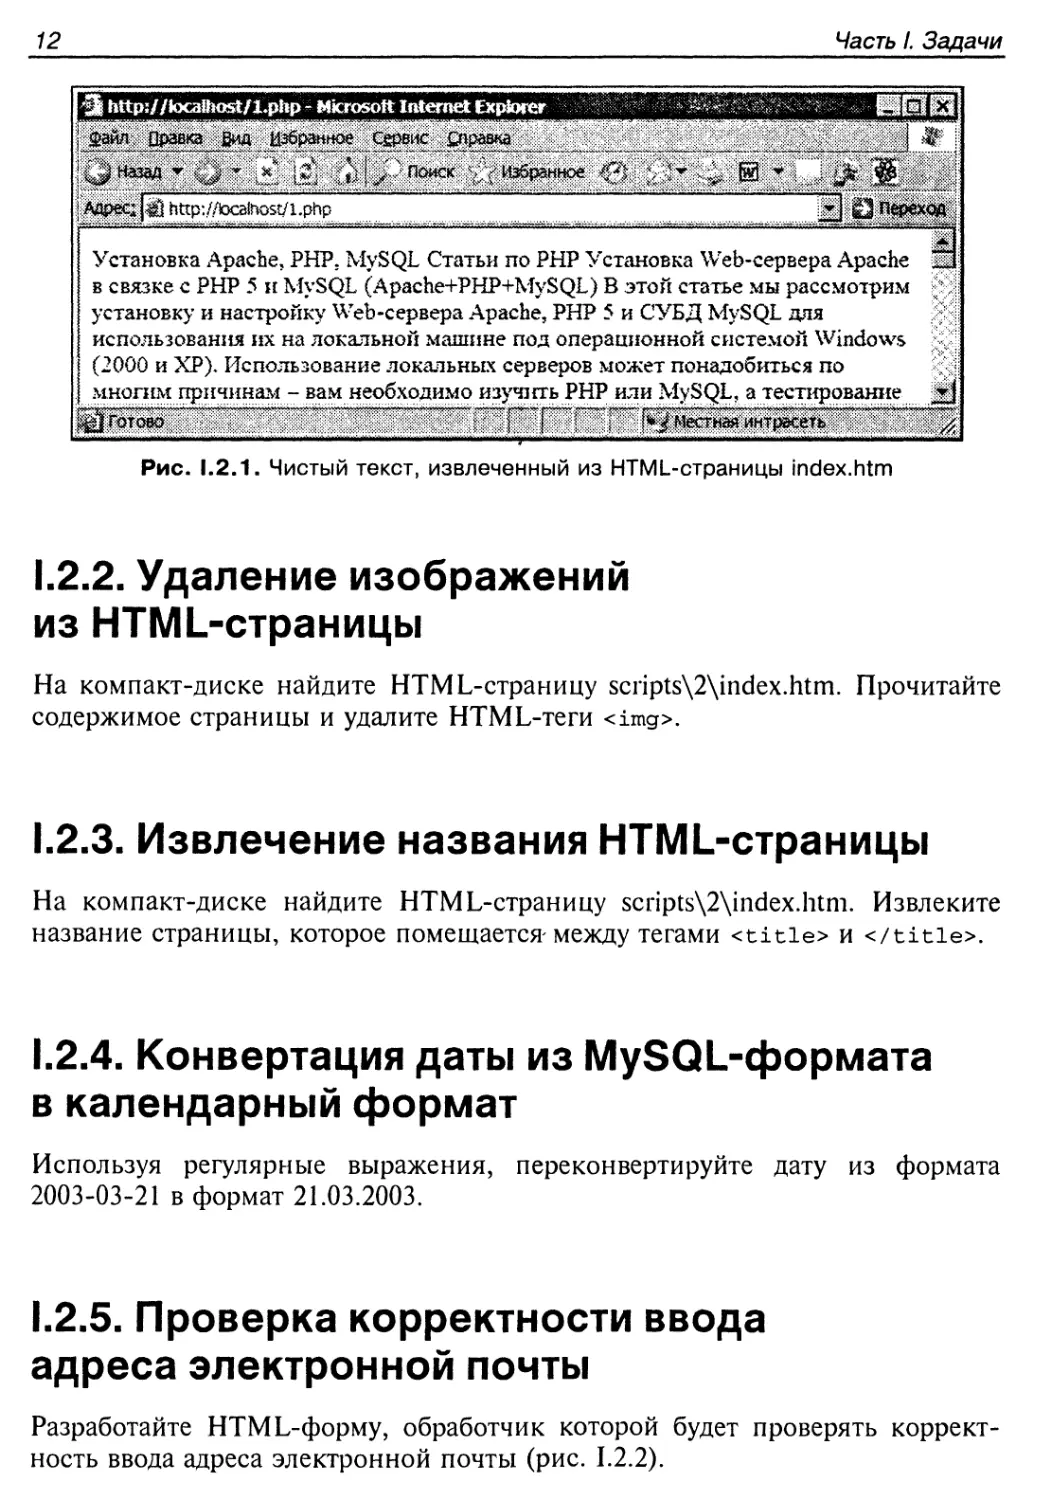 1.2.2. Удаление изображений из HTML-страницы
1.2.3. Извлечение названия HTML-страницы
1.2.4. Конвертация даты из MySQL-формата в календарный формат
1.2.5. Проверка корректности ввода адреса электронной почты